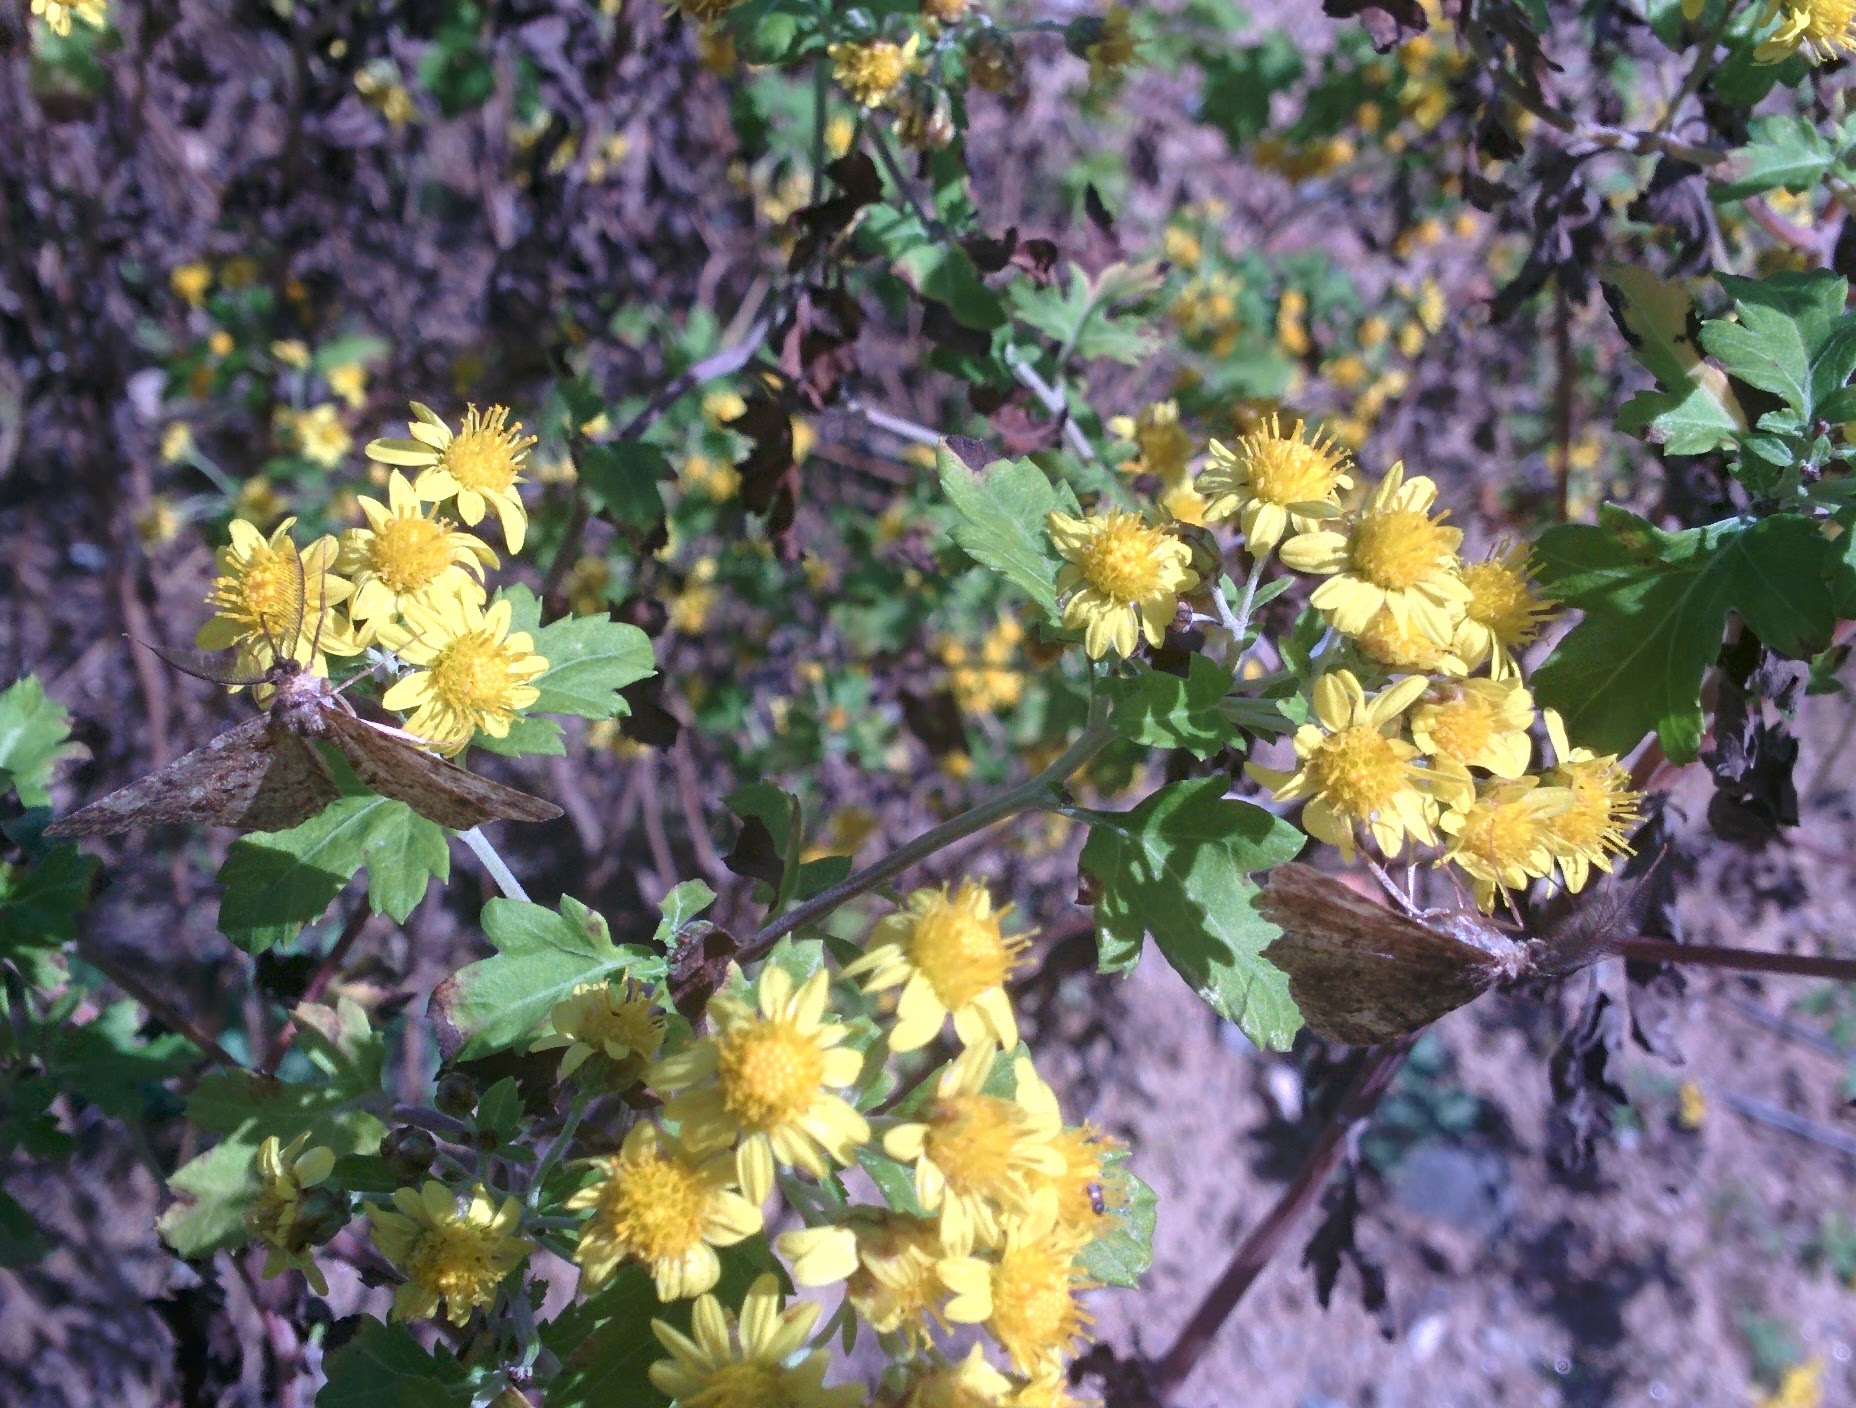 IMG_20151014_130843.jpg 노란색 작은 꽃의 들국화(산국) 찾은 나방 두마리